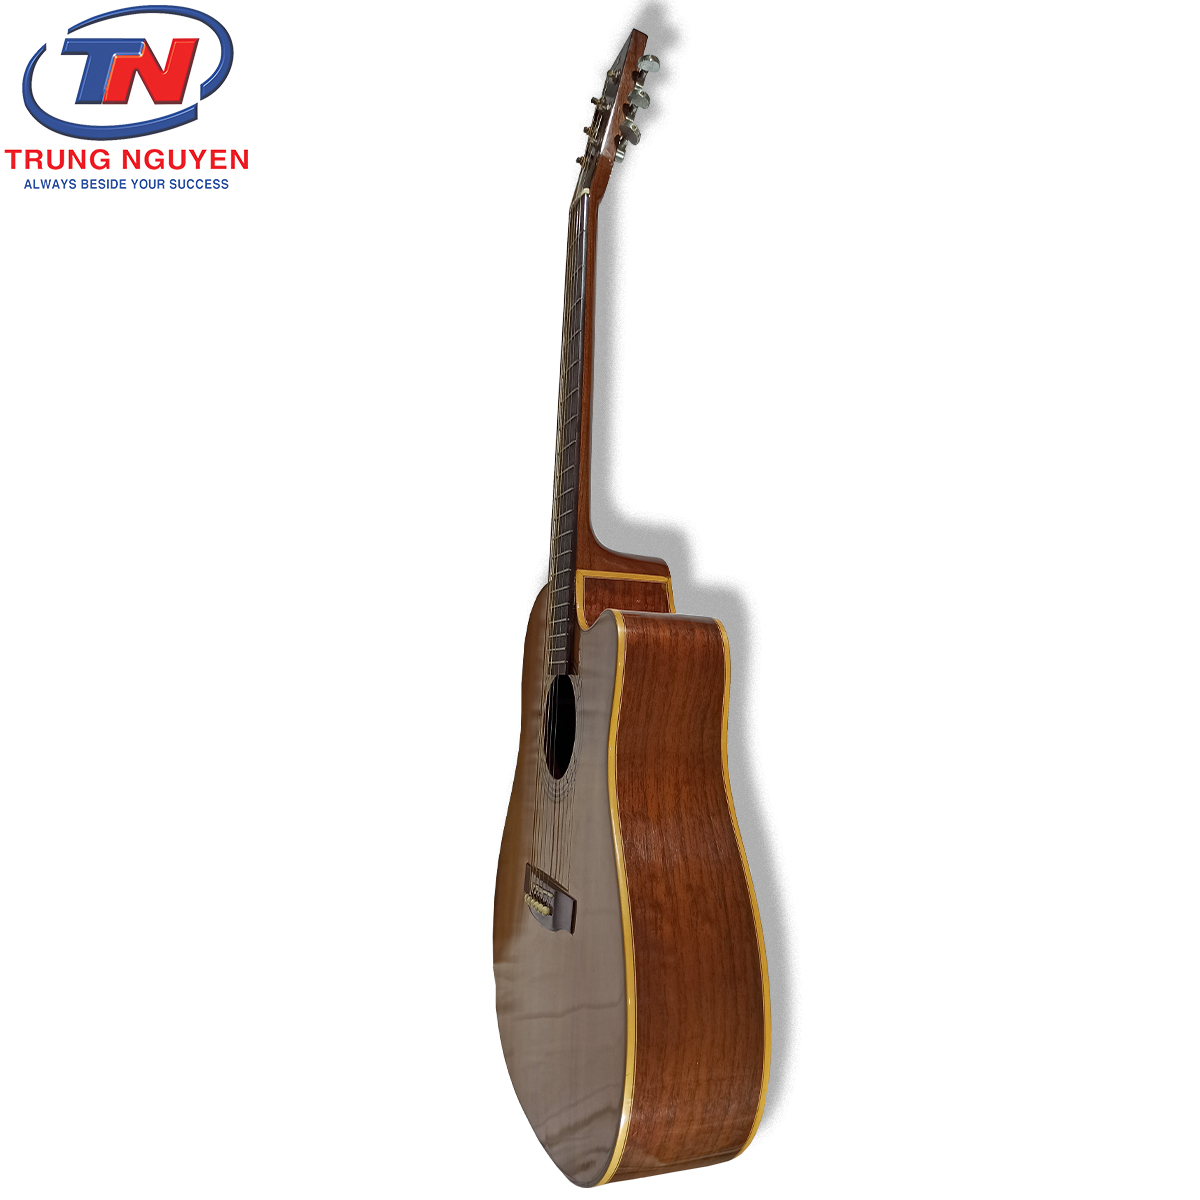 Đàn guitar Việt Nam gỗ cao cấp. Nhạc cụ Trung Nguyên|Chuyên Nhạc cụ